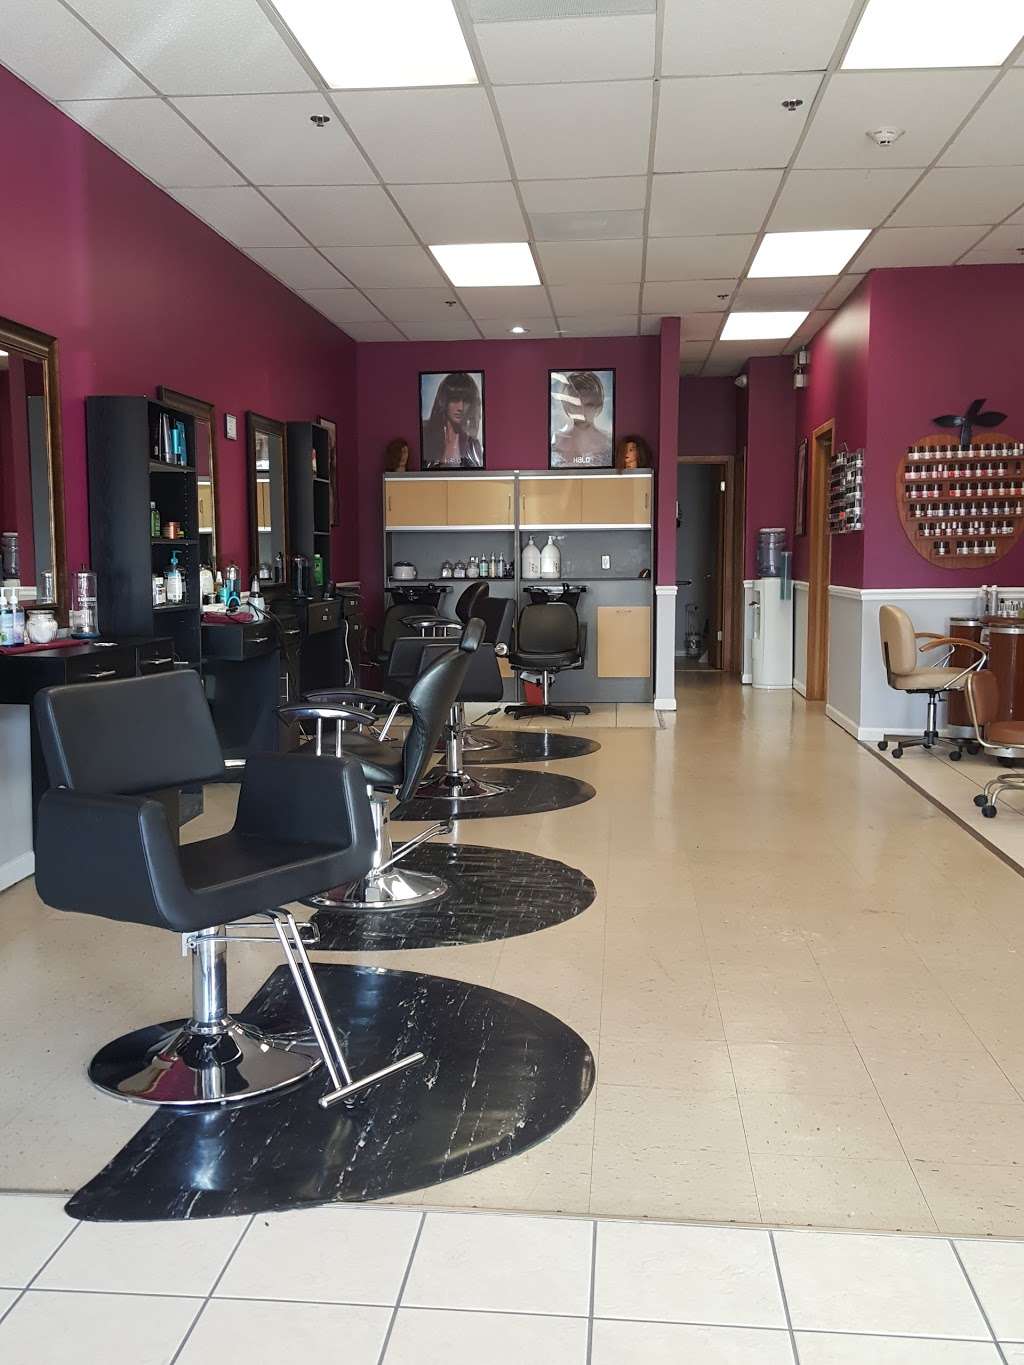 Saadia Nail & Hair Salon | 809 E Rollins Rd, Round Lake Beach, IL 60073, USA | Phone: (224) 541-4361